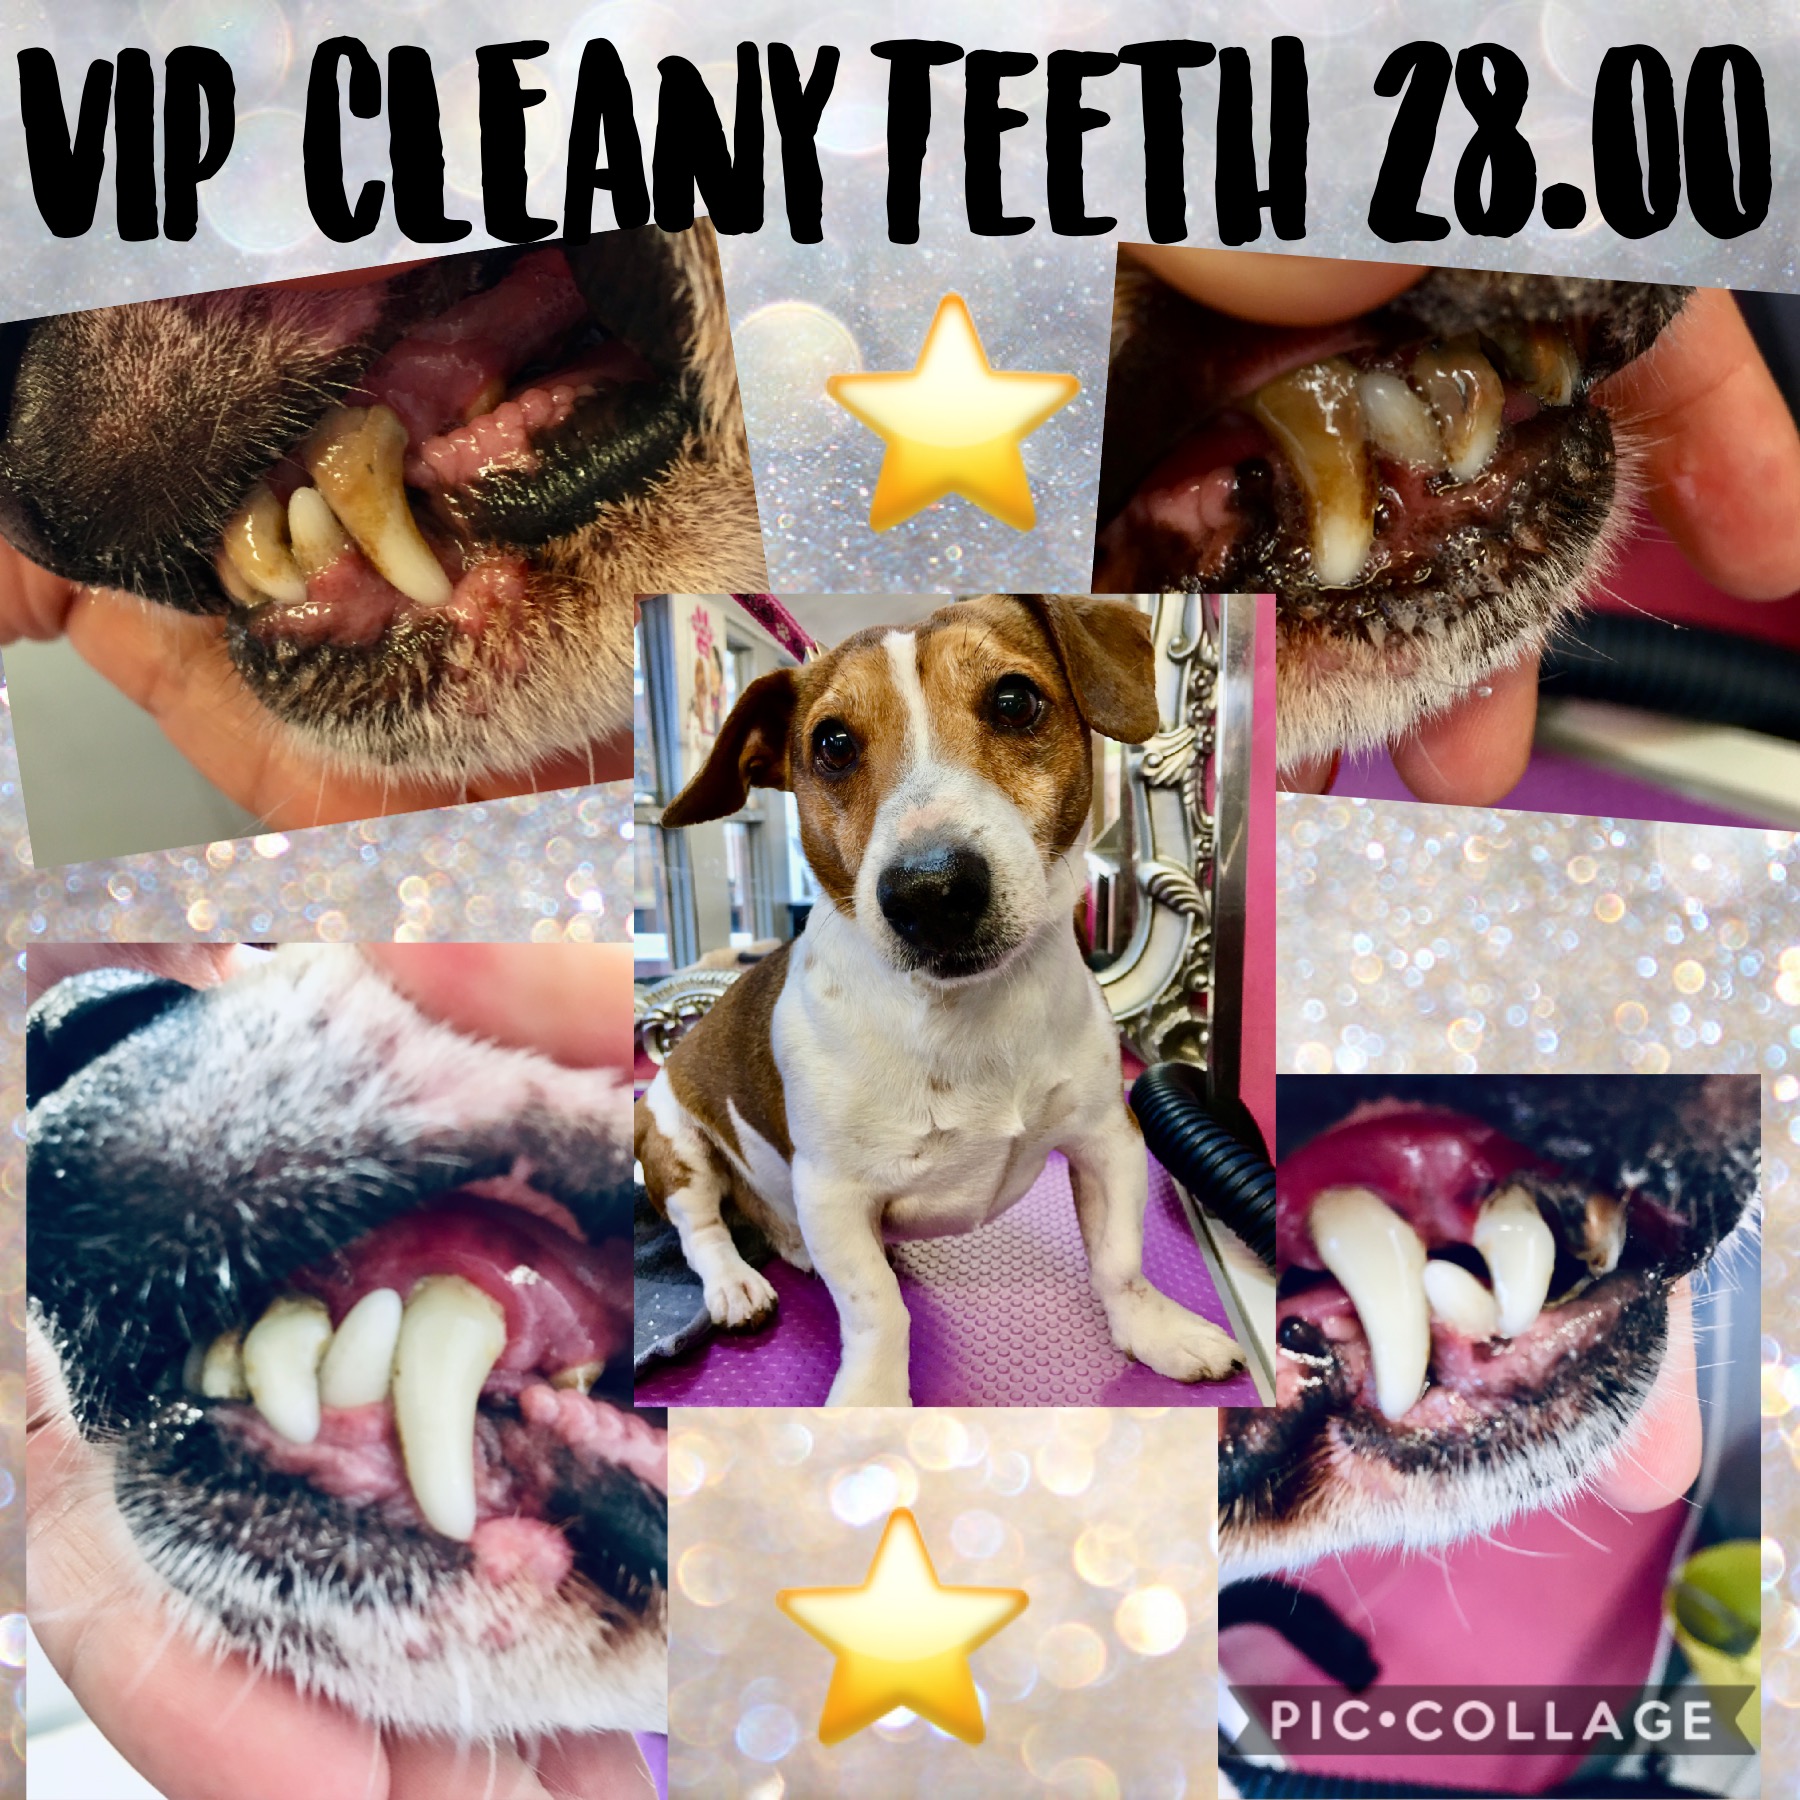 VIP Cleany teeth treatment